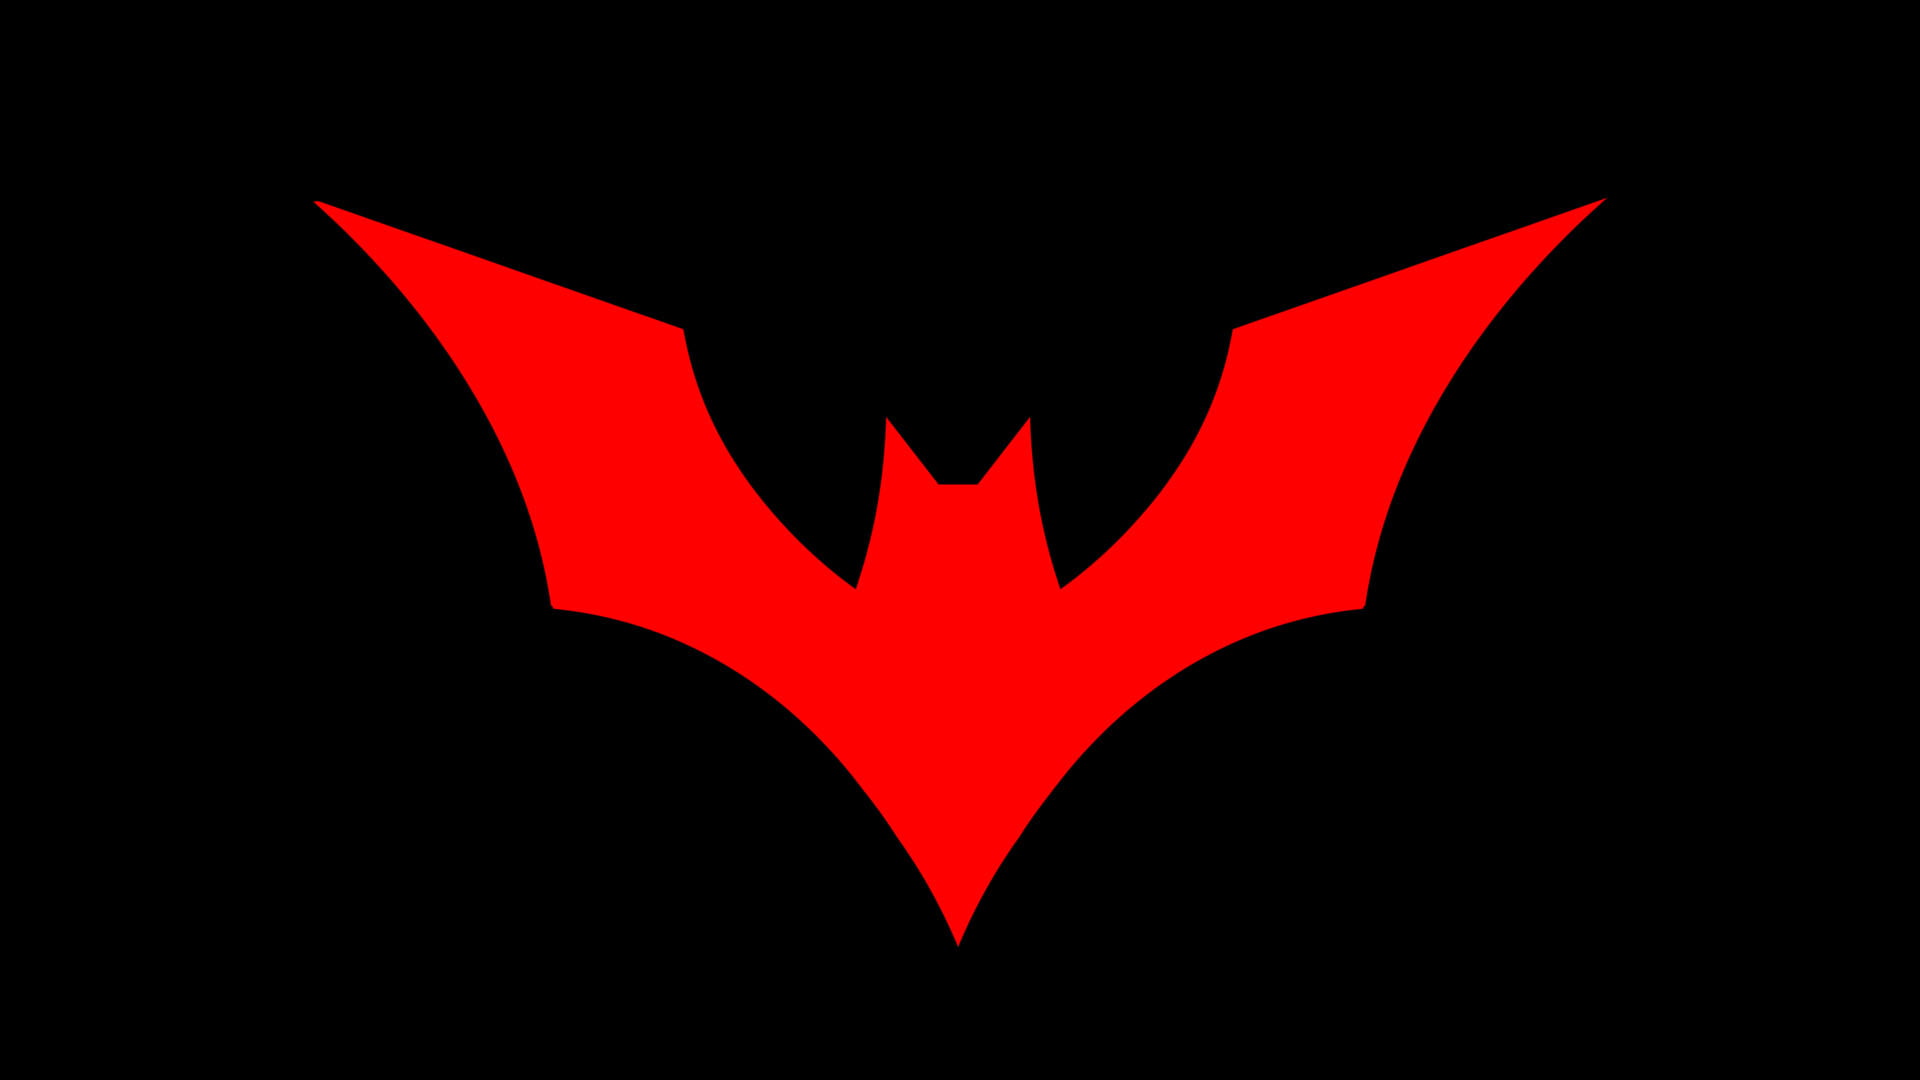 Batman Beyond, Batman logo, DC Comics